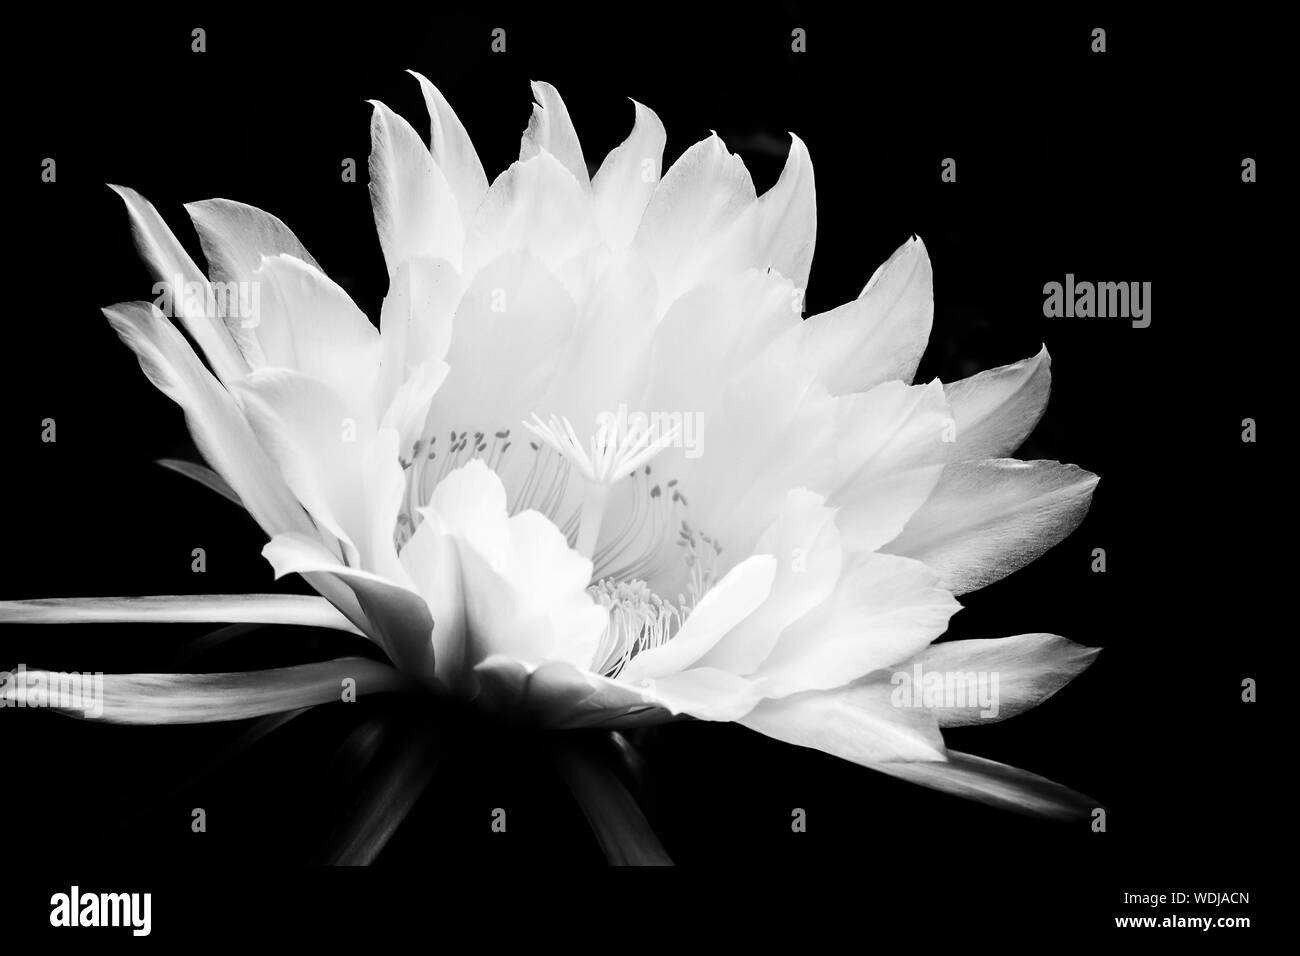 Flor blanca que florece glorioso contra el fondo negro. Noche blooming cactus flower en el contraste negro y blanco. Foto de stock